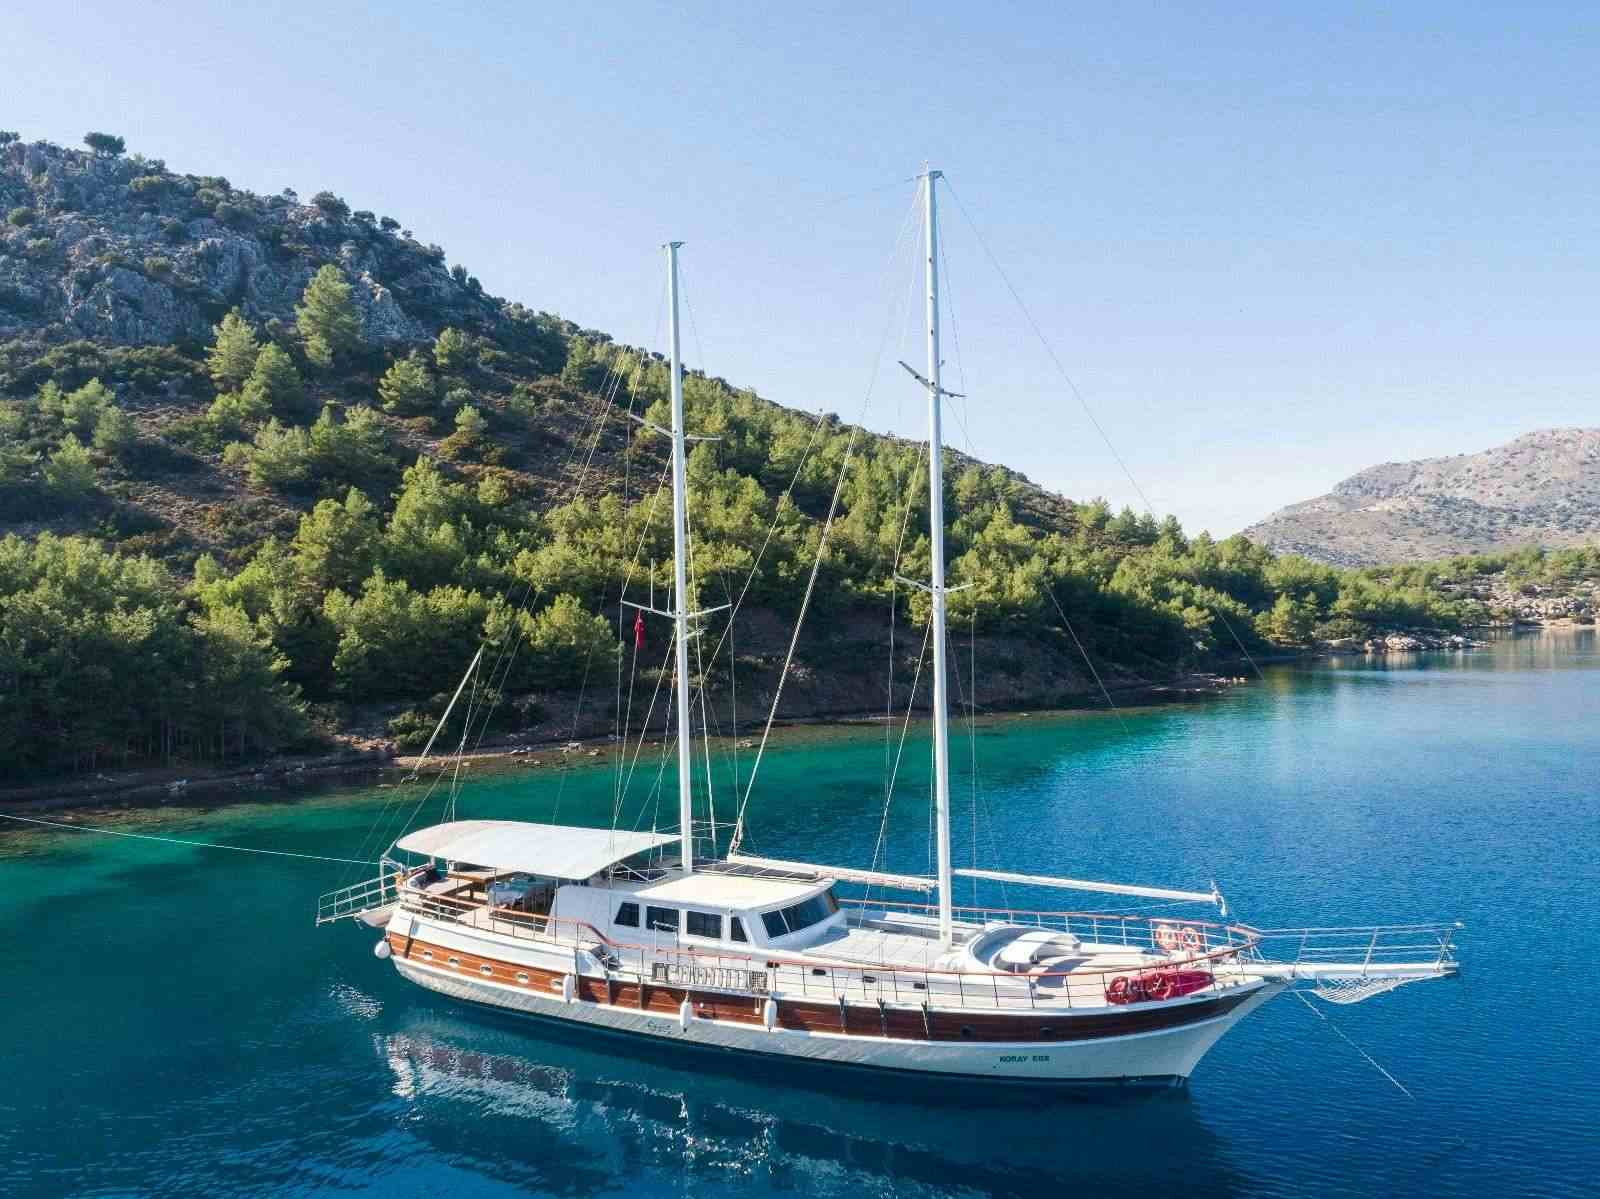 koray ege - Yacht Charter Rosignano Marittimo & Boat hire in Greece & Turkey 1